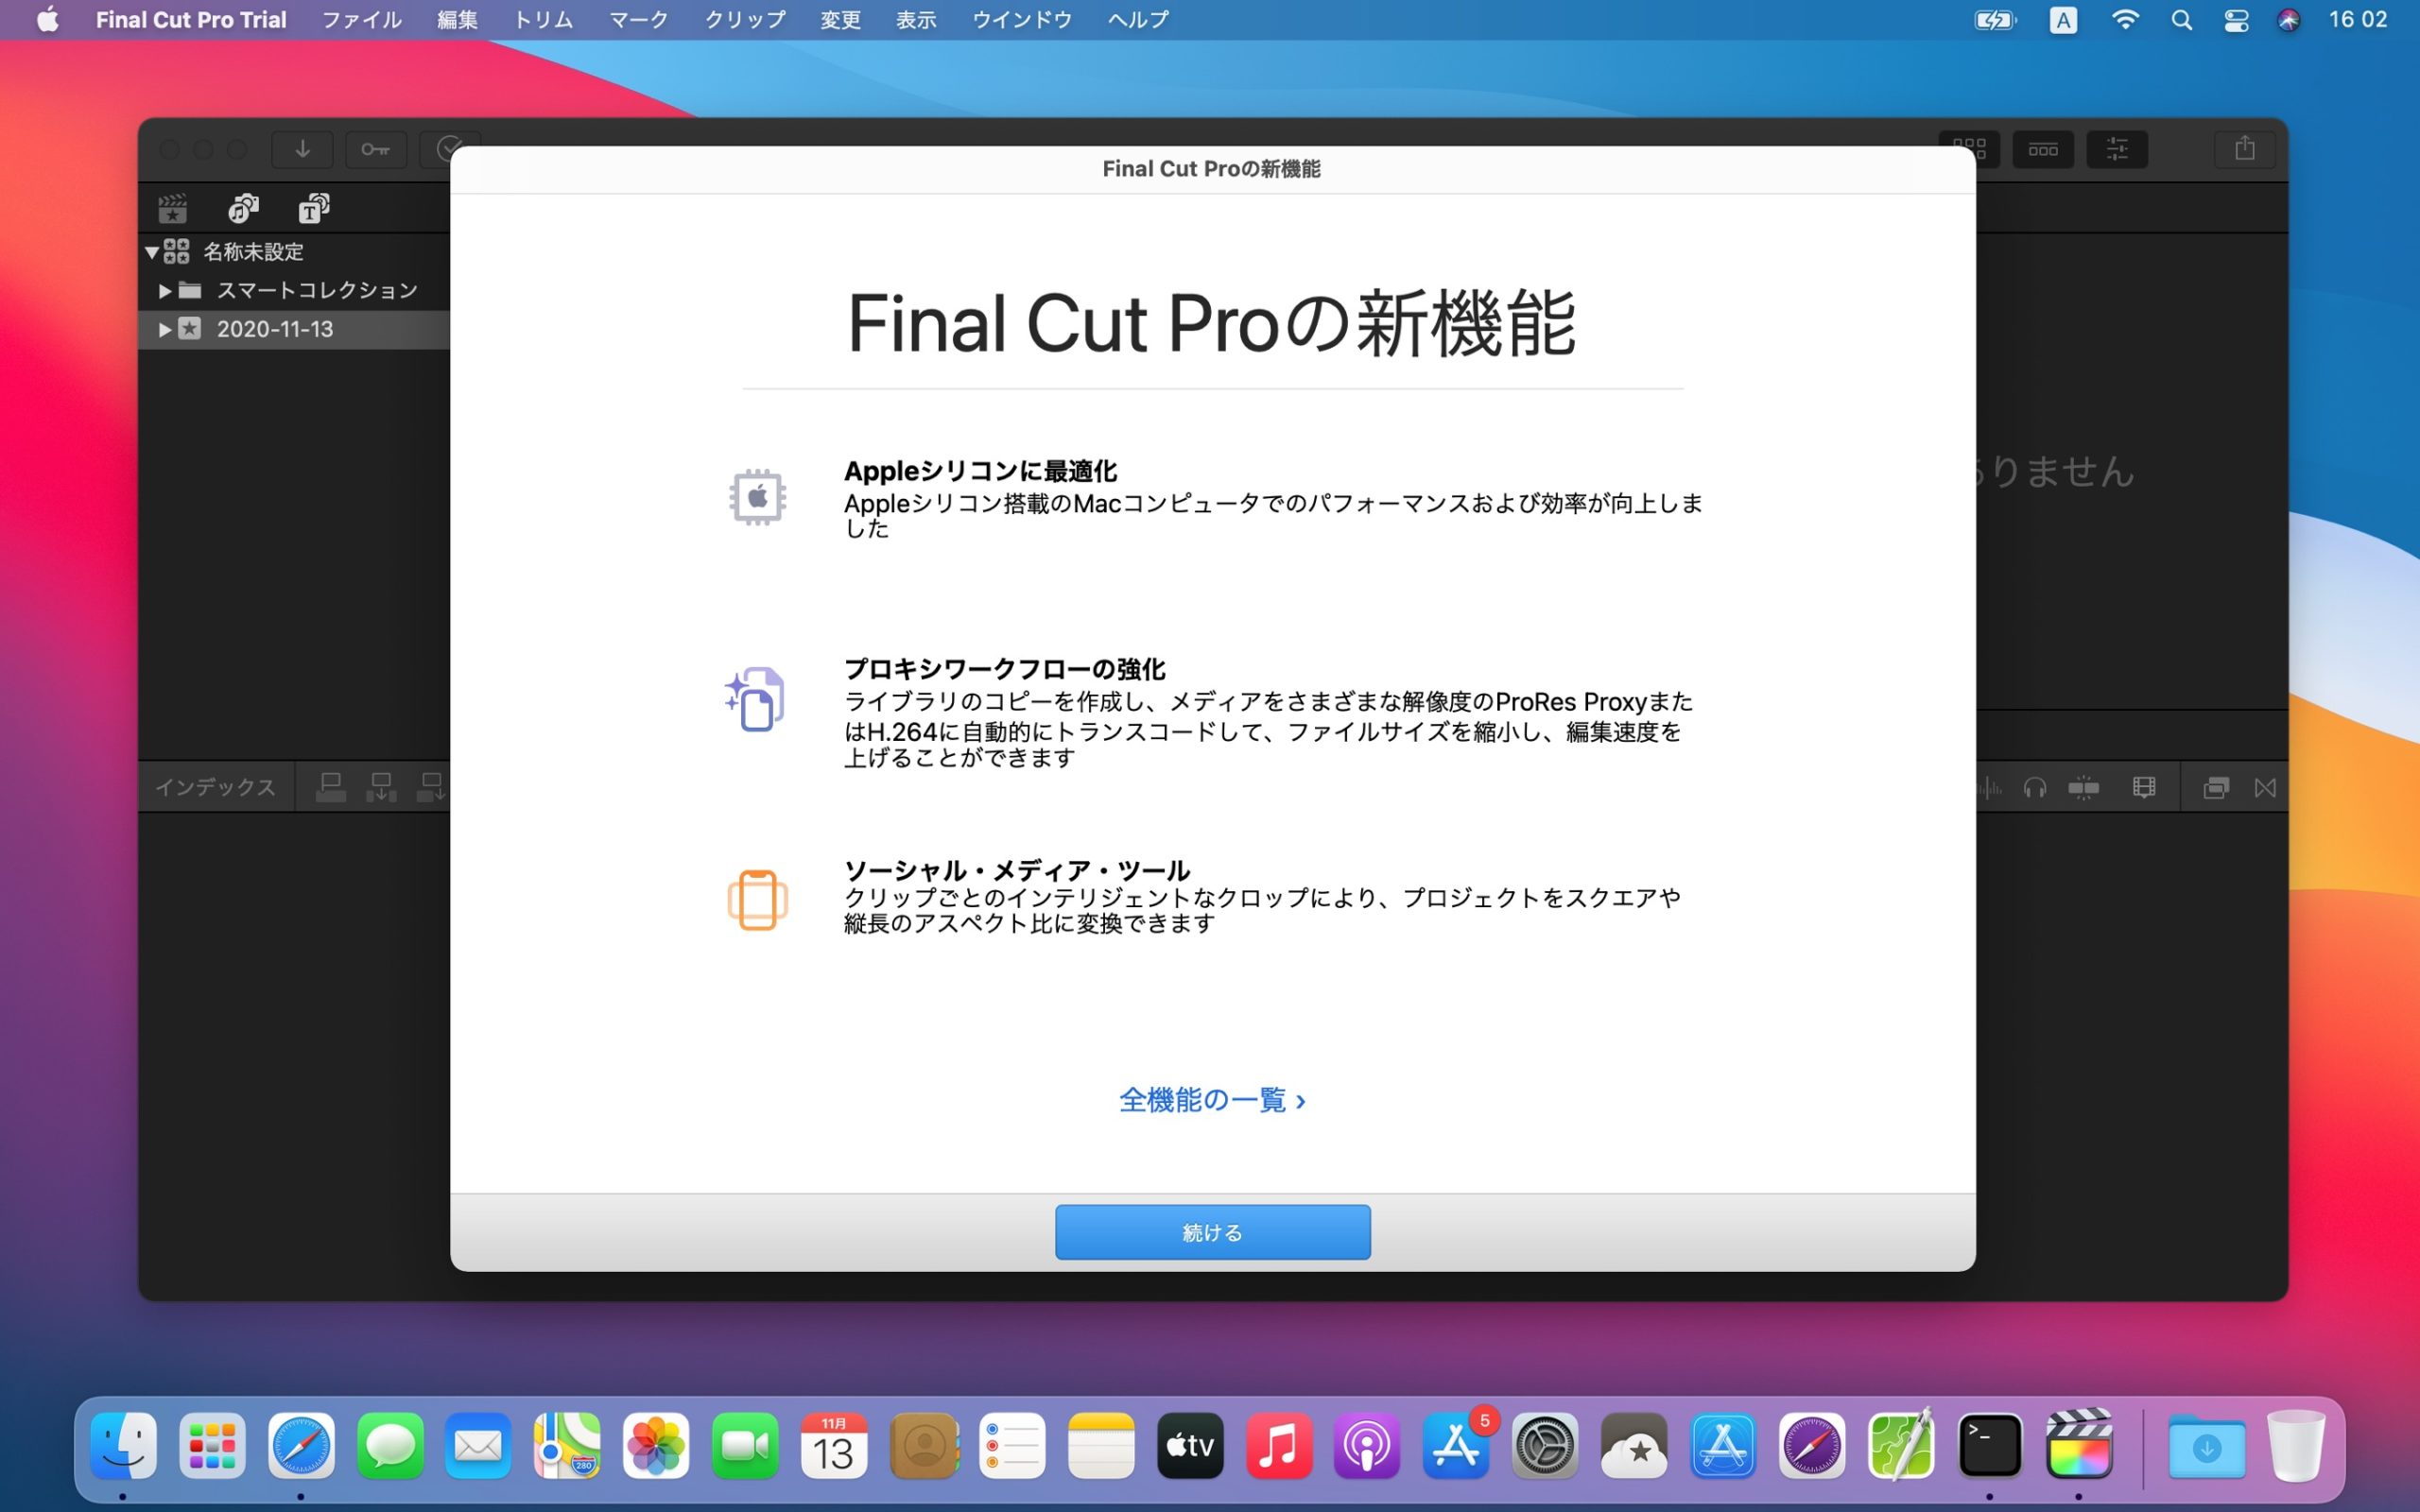 Final Cut Pro on macOS 11 Big Sur